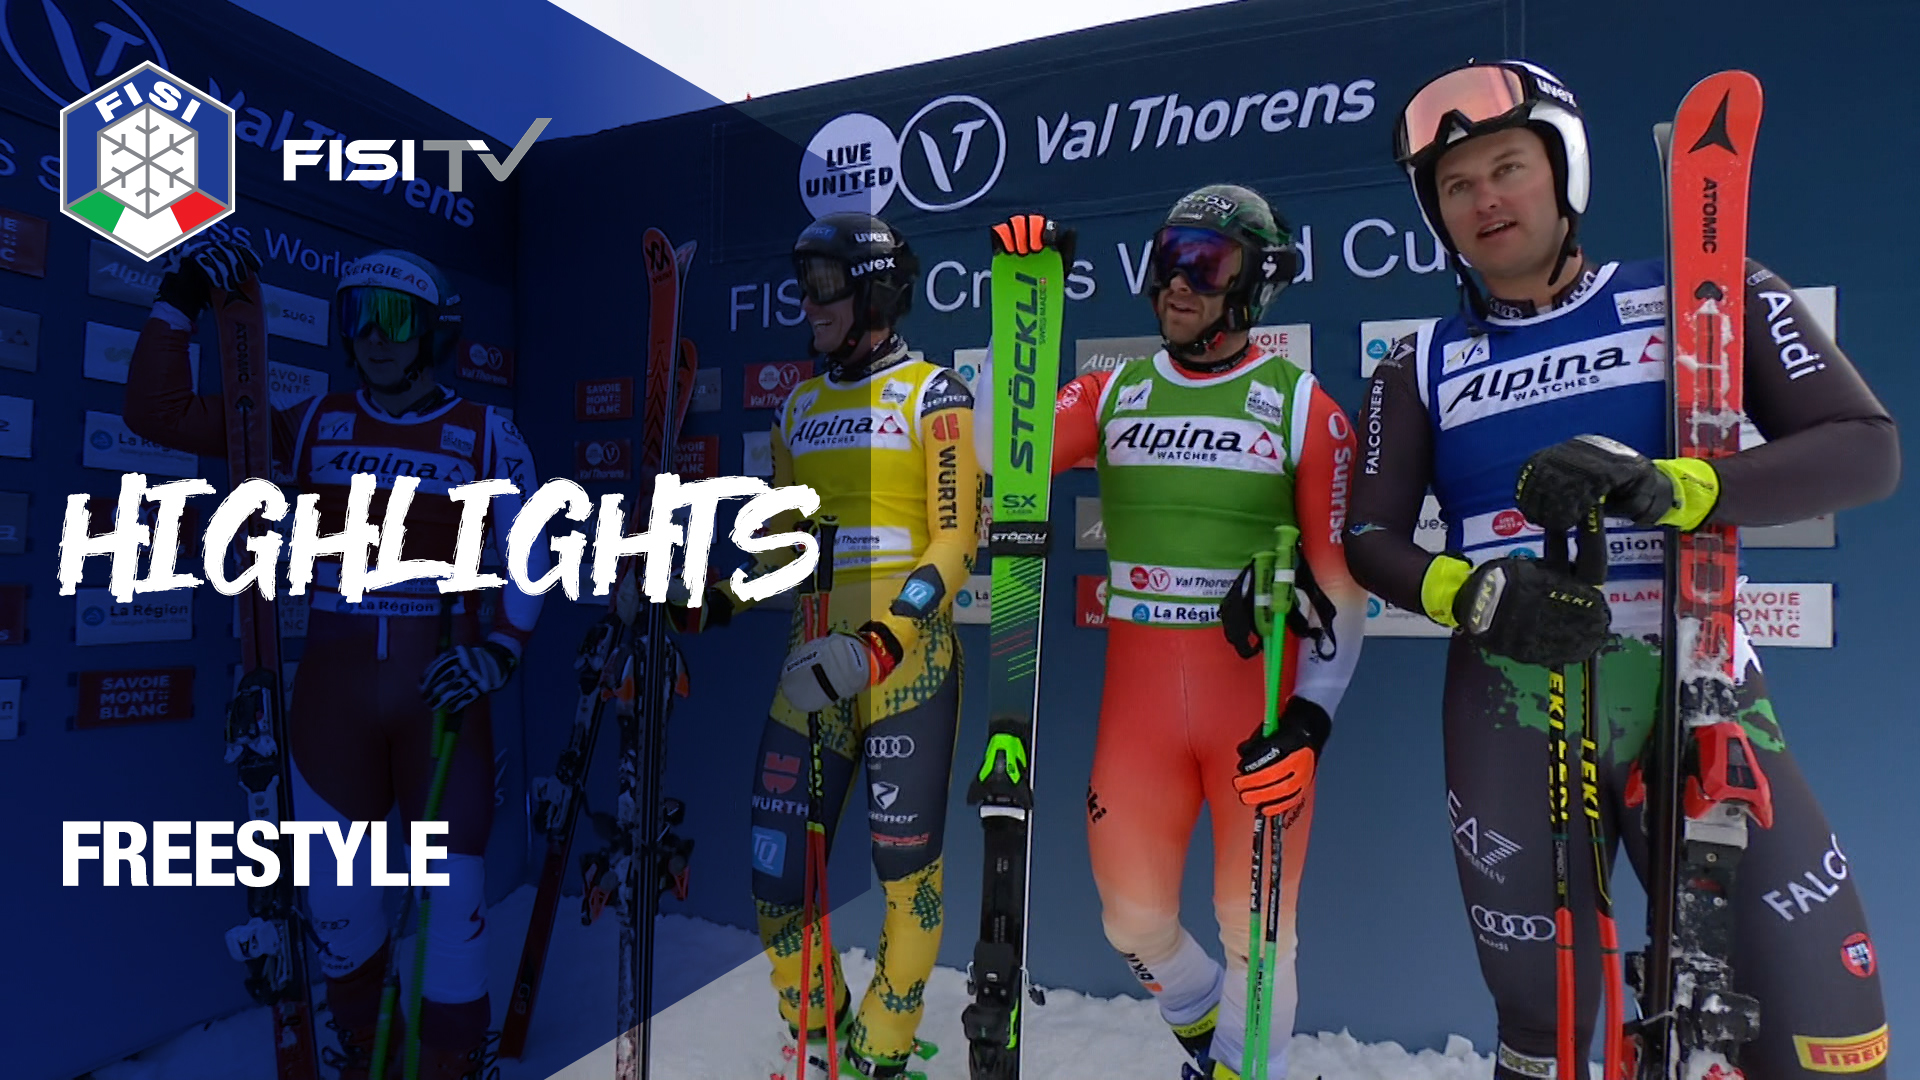 Dominik Zuech sfiora il podio in Val Thorens | FISI TV